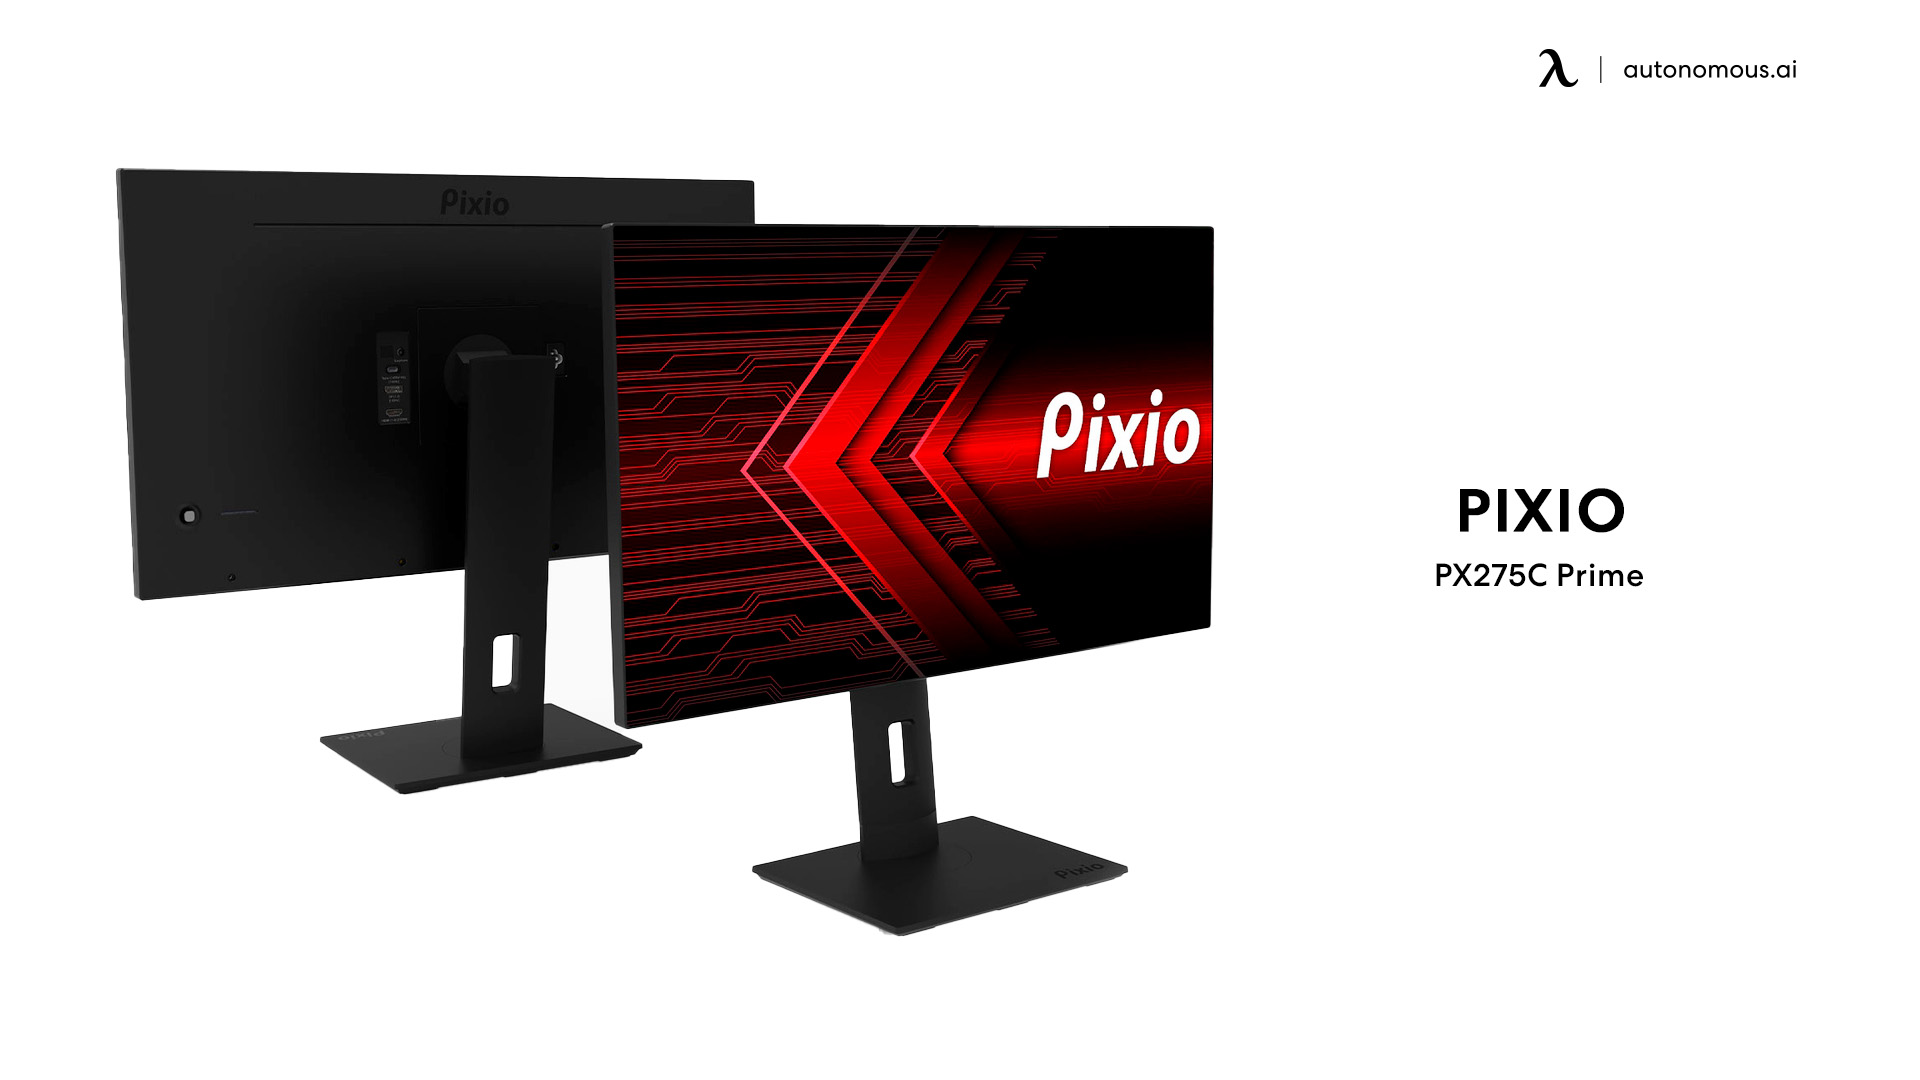 Pixio PX275C Prime Gaming Monitor